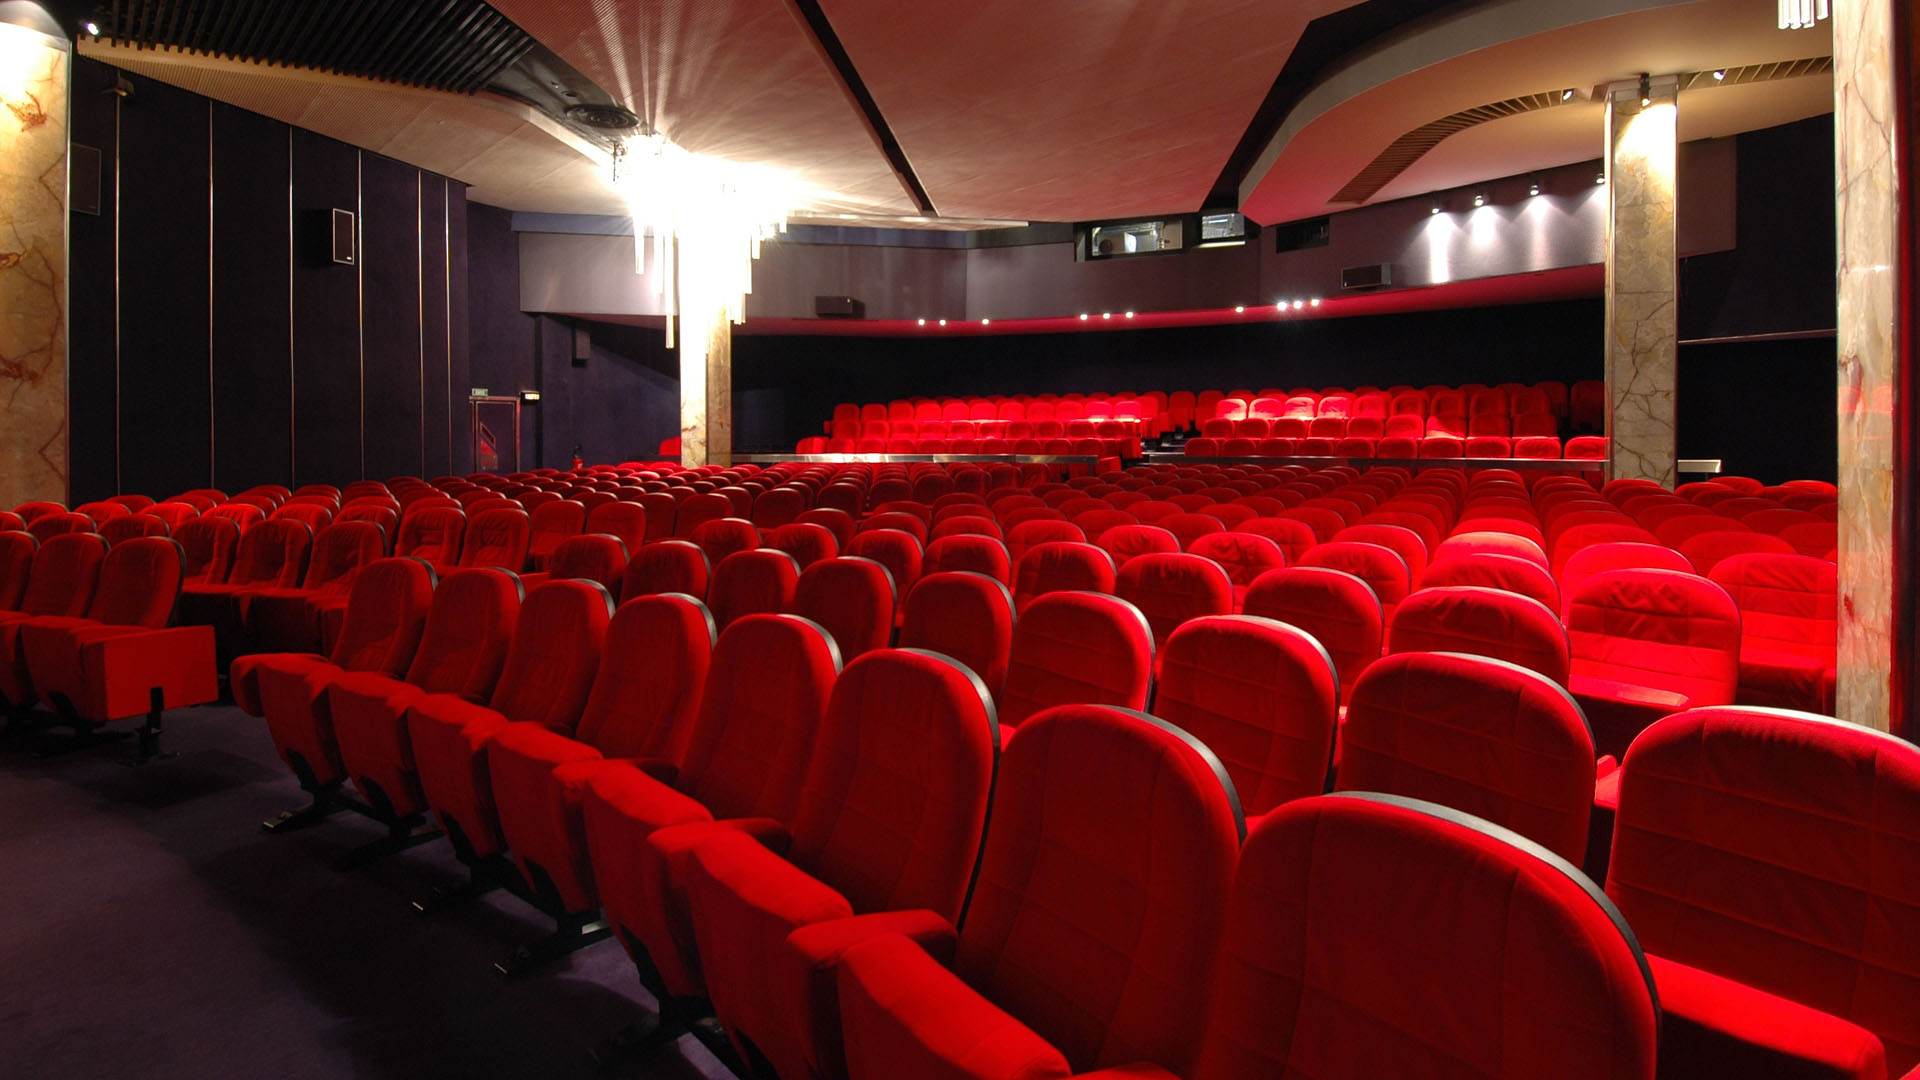 200 Free Auditorium  Audience Images  Pixabay